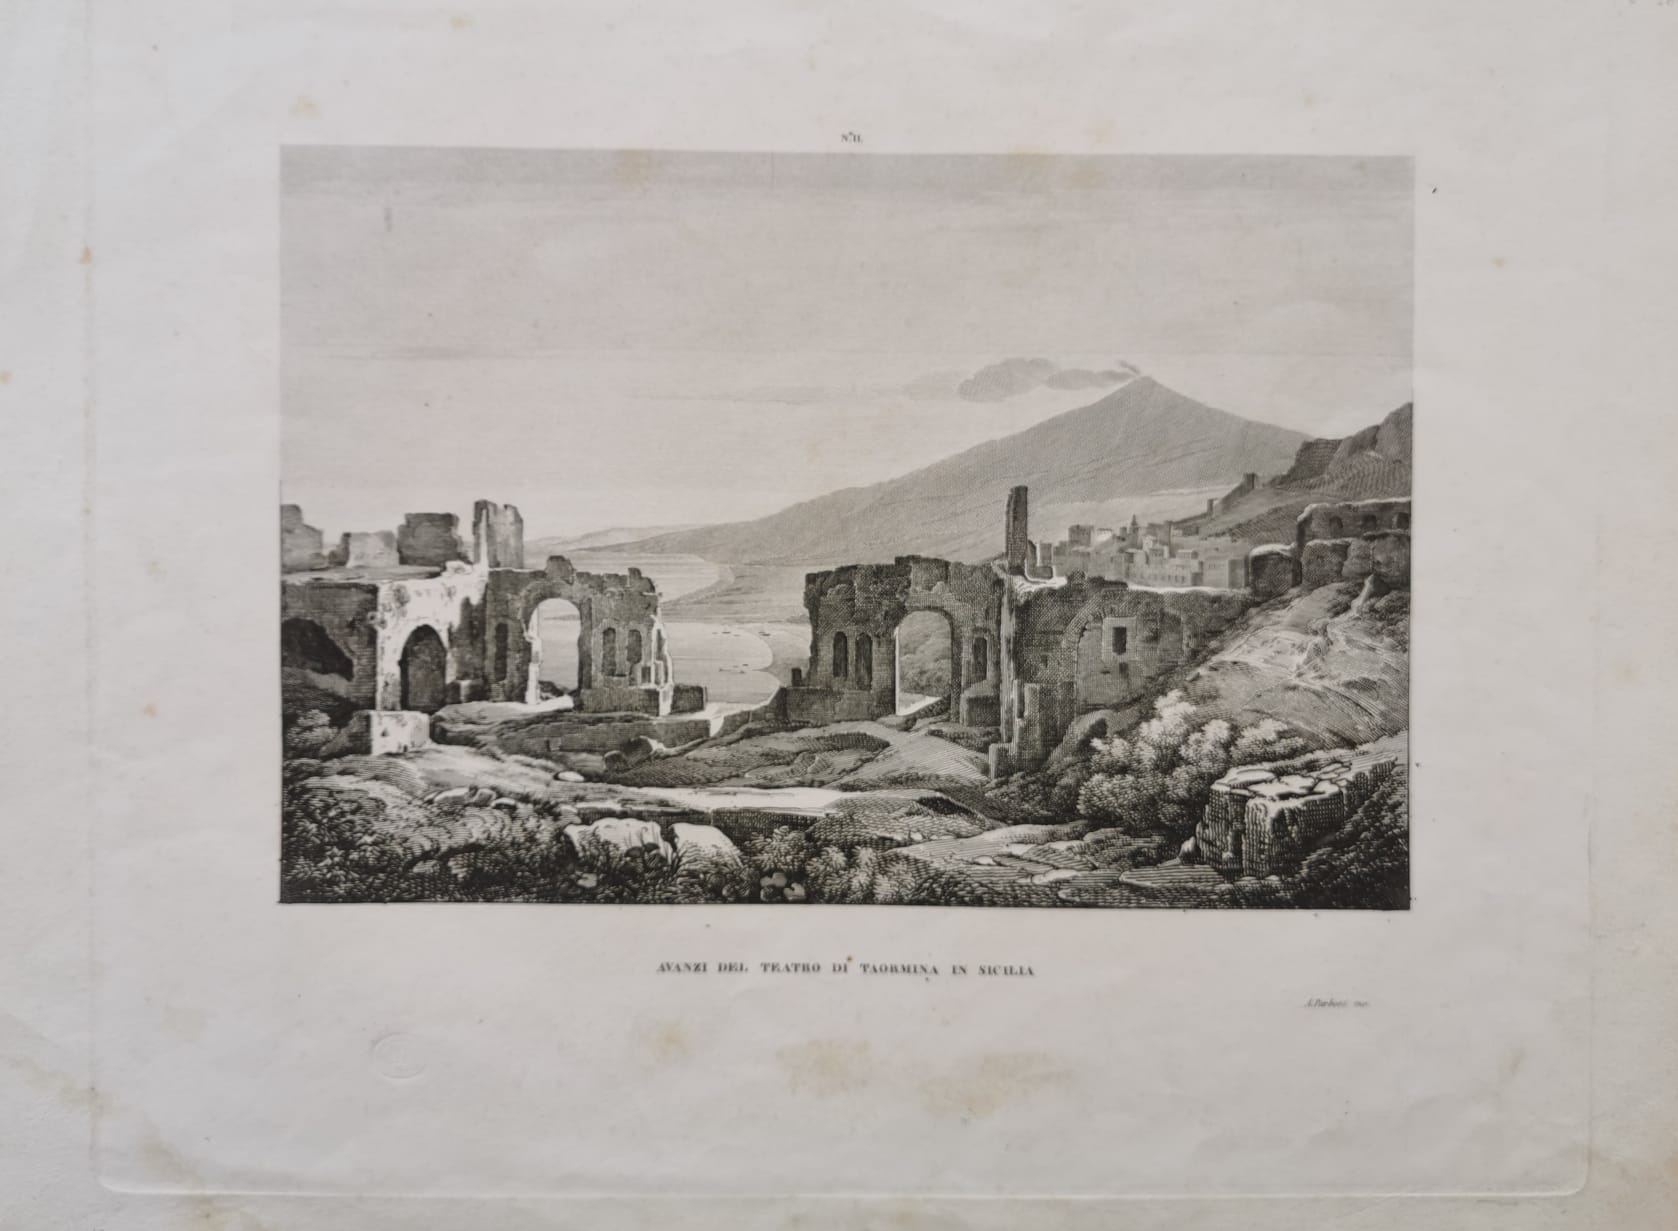 Avanzi del Teatro di Taormina in Sicilia 1845